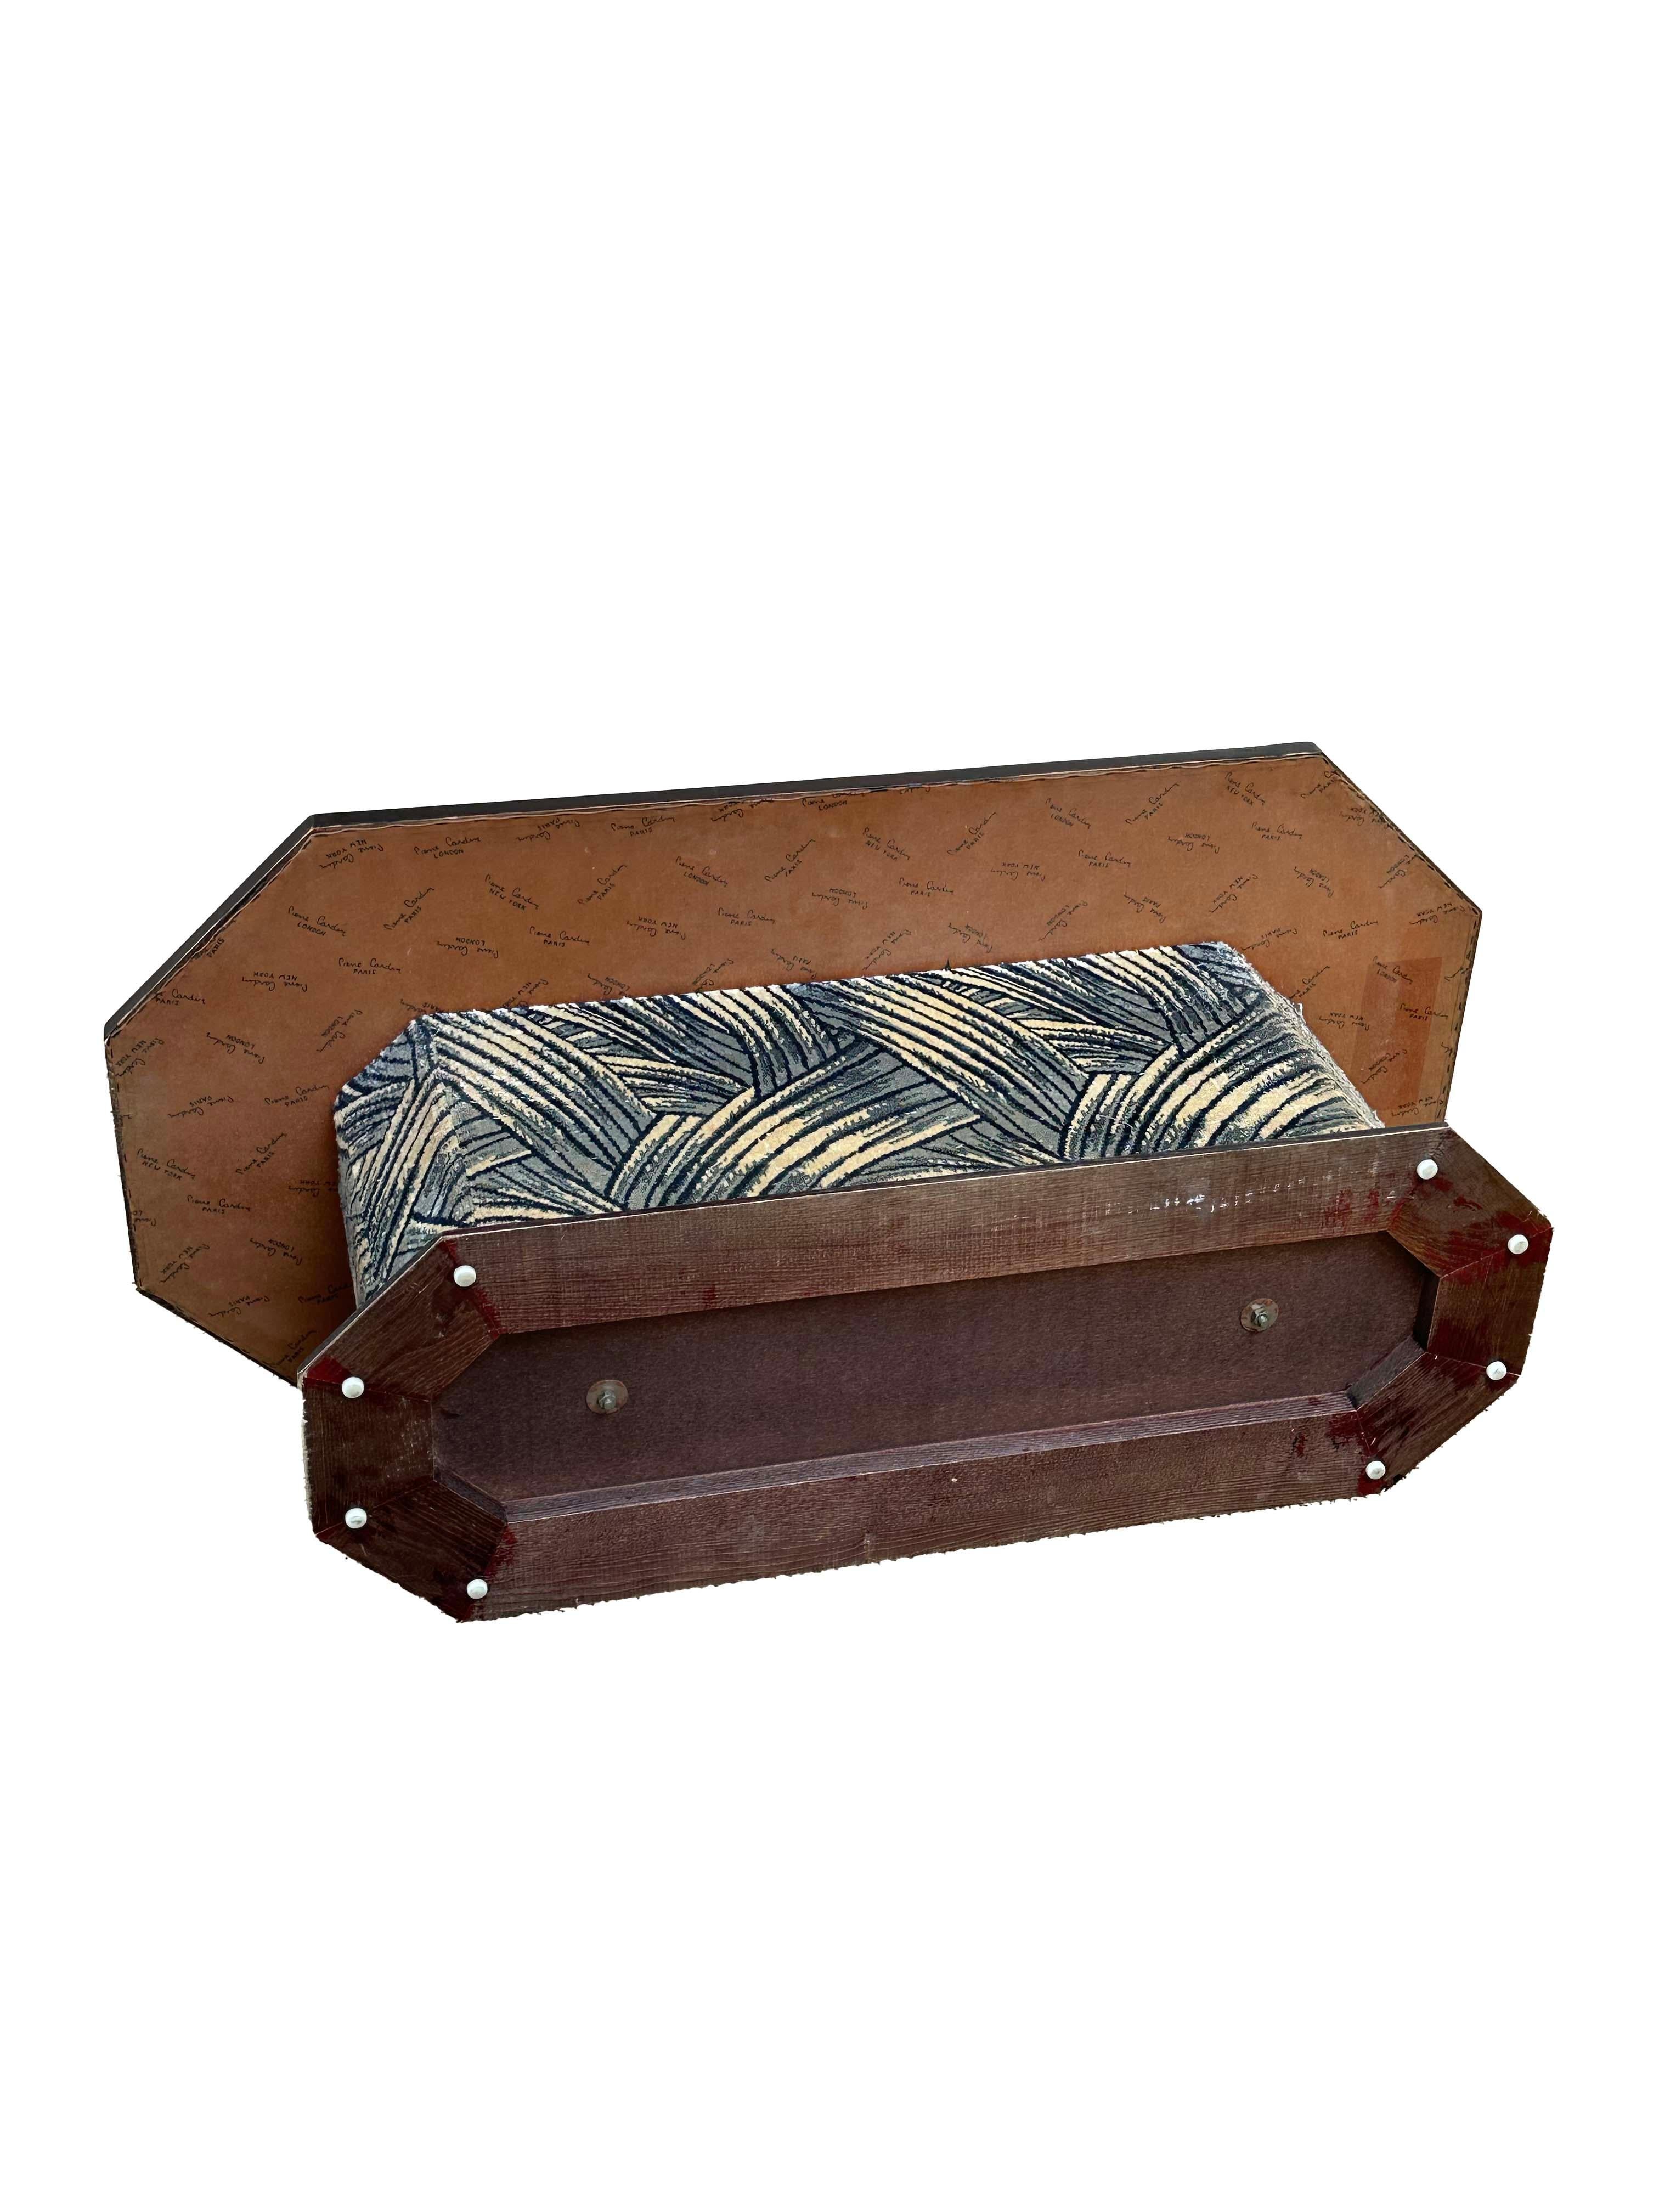 Pierre Cardin 1970s upholstered velvet coffee table  For Sale 1